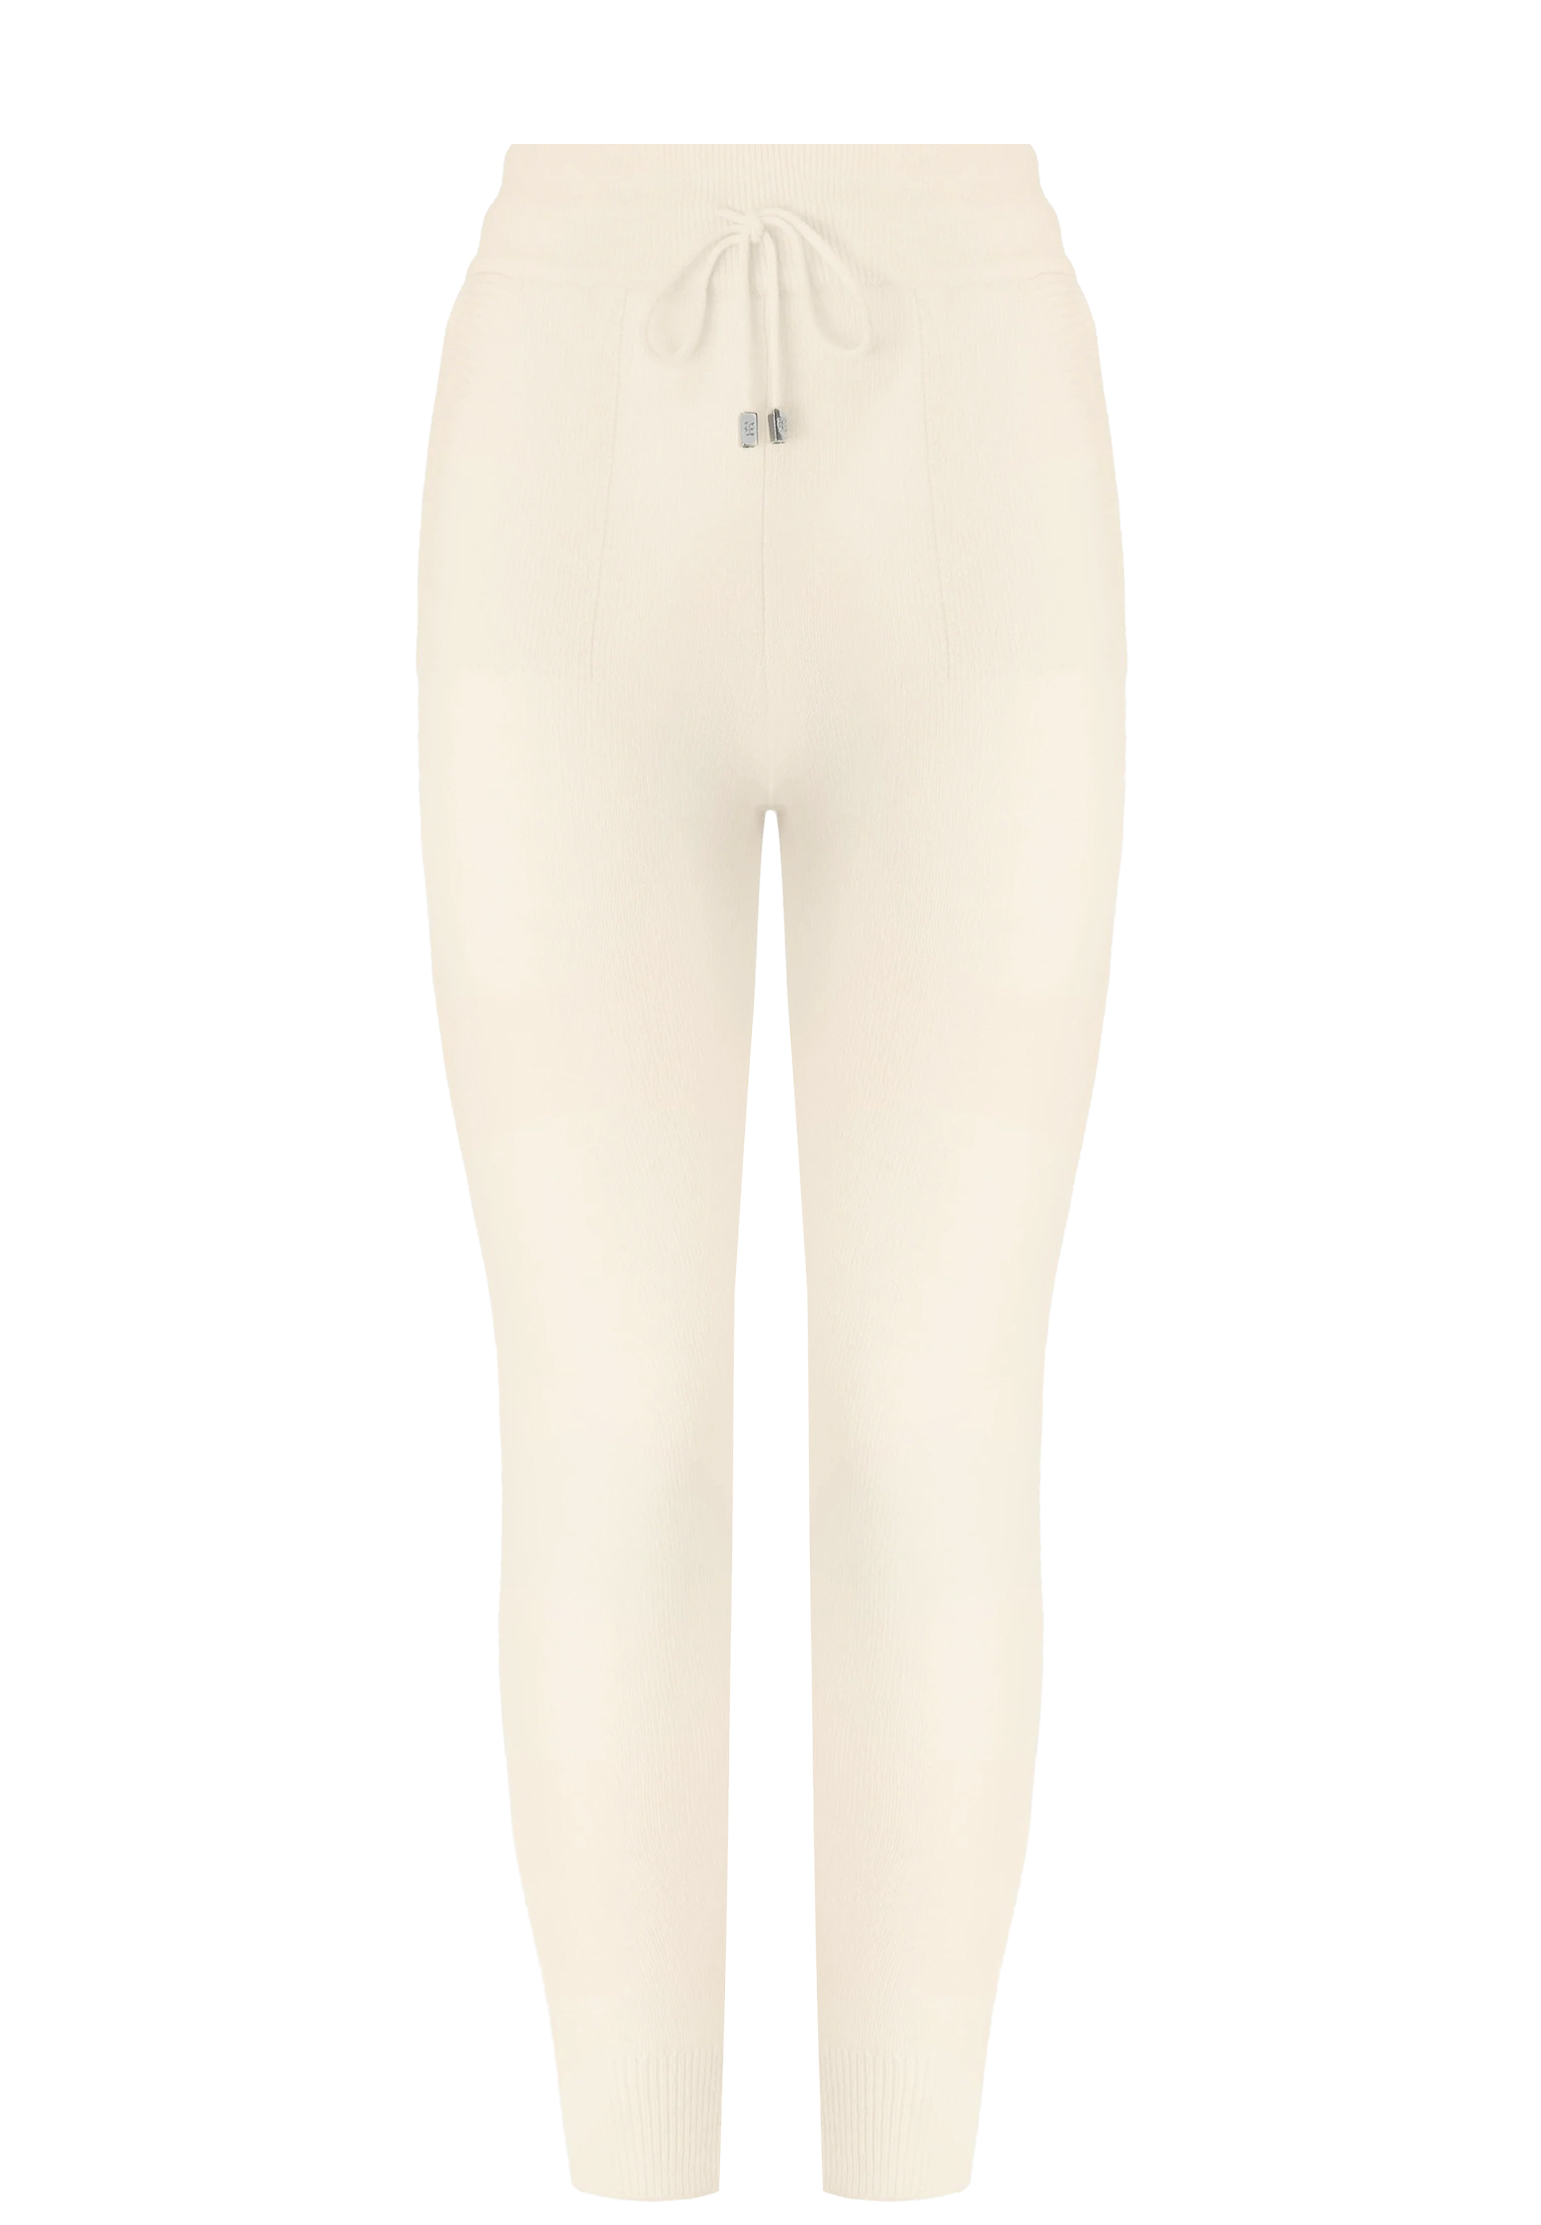 Спортивные брюки женские Ermanno Scervino 147923 белые S